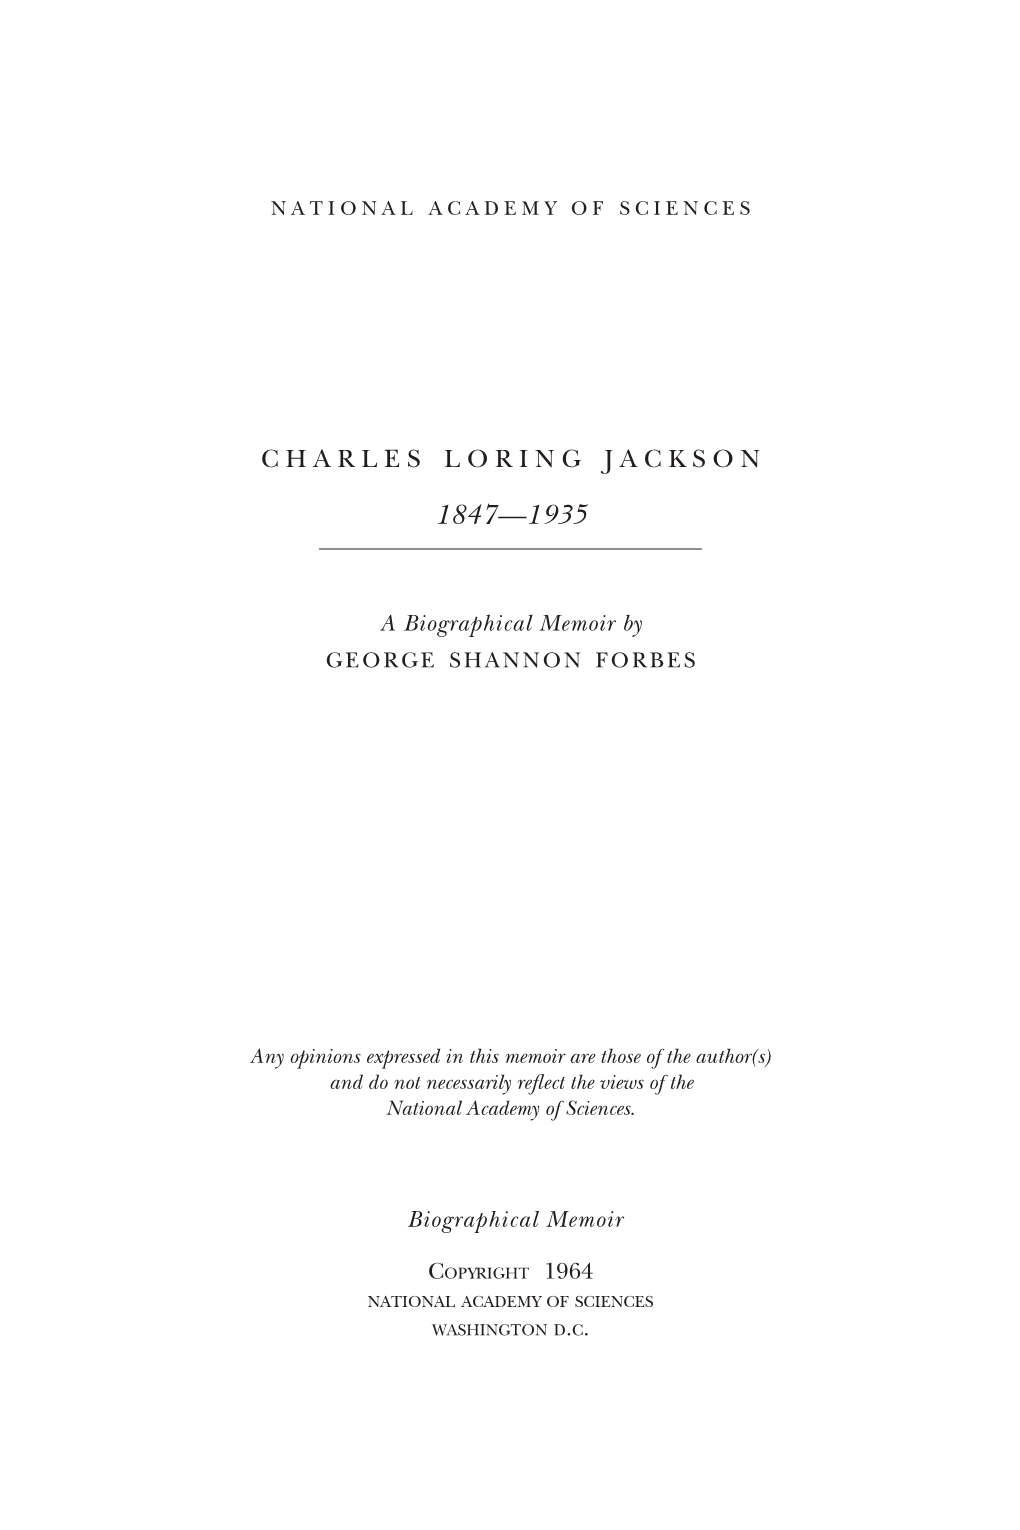 Charles Loring Jackson